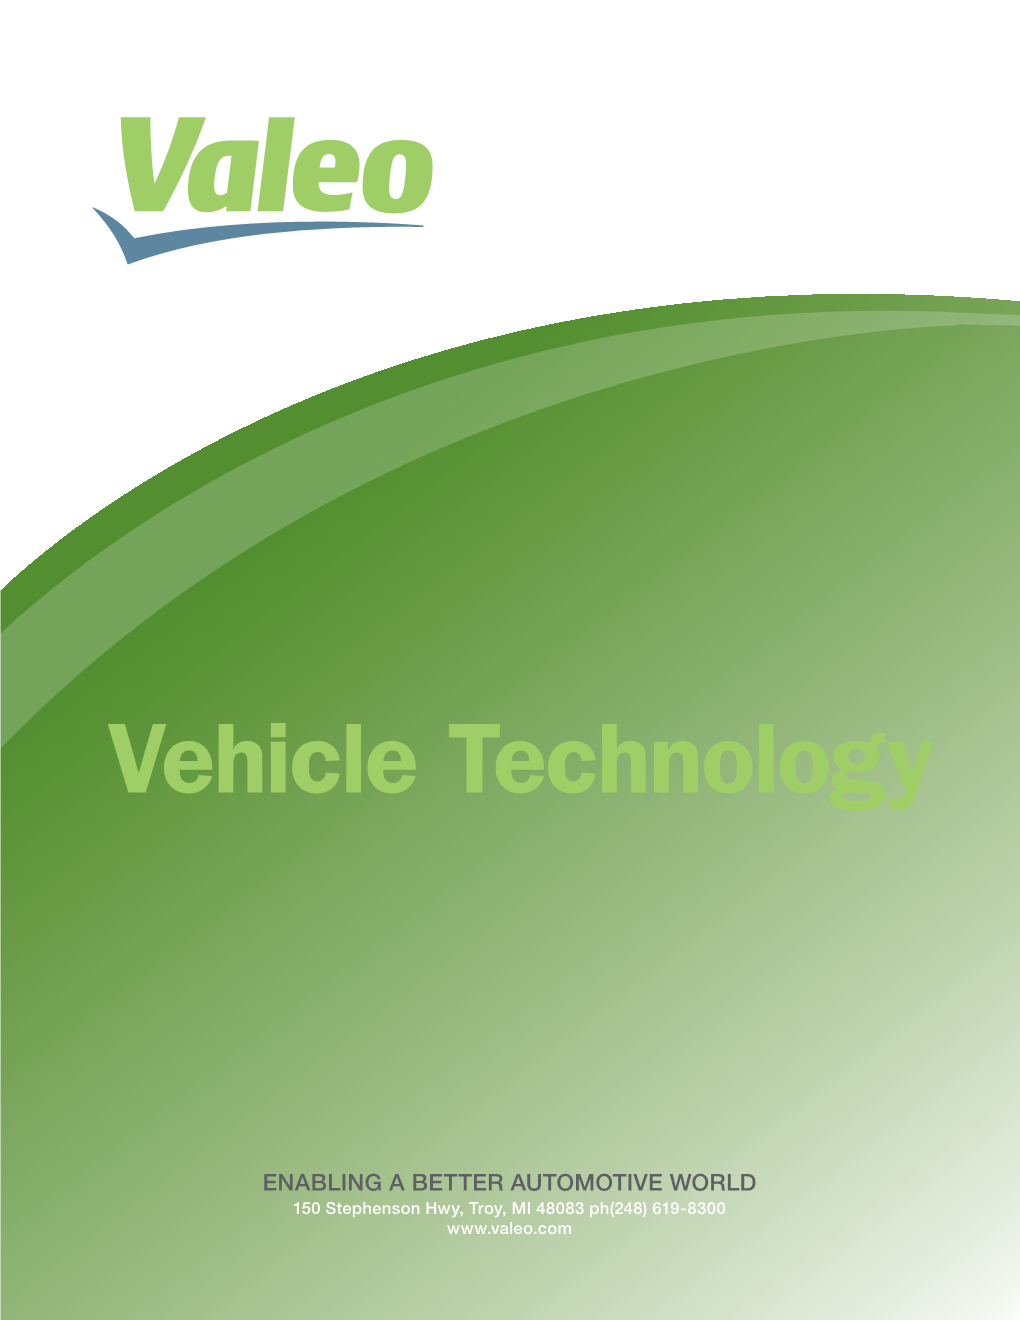 Vehicle Technology